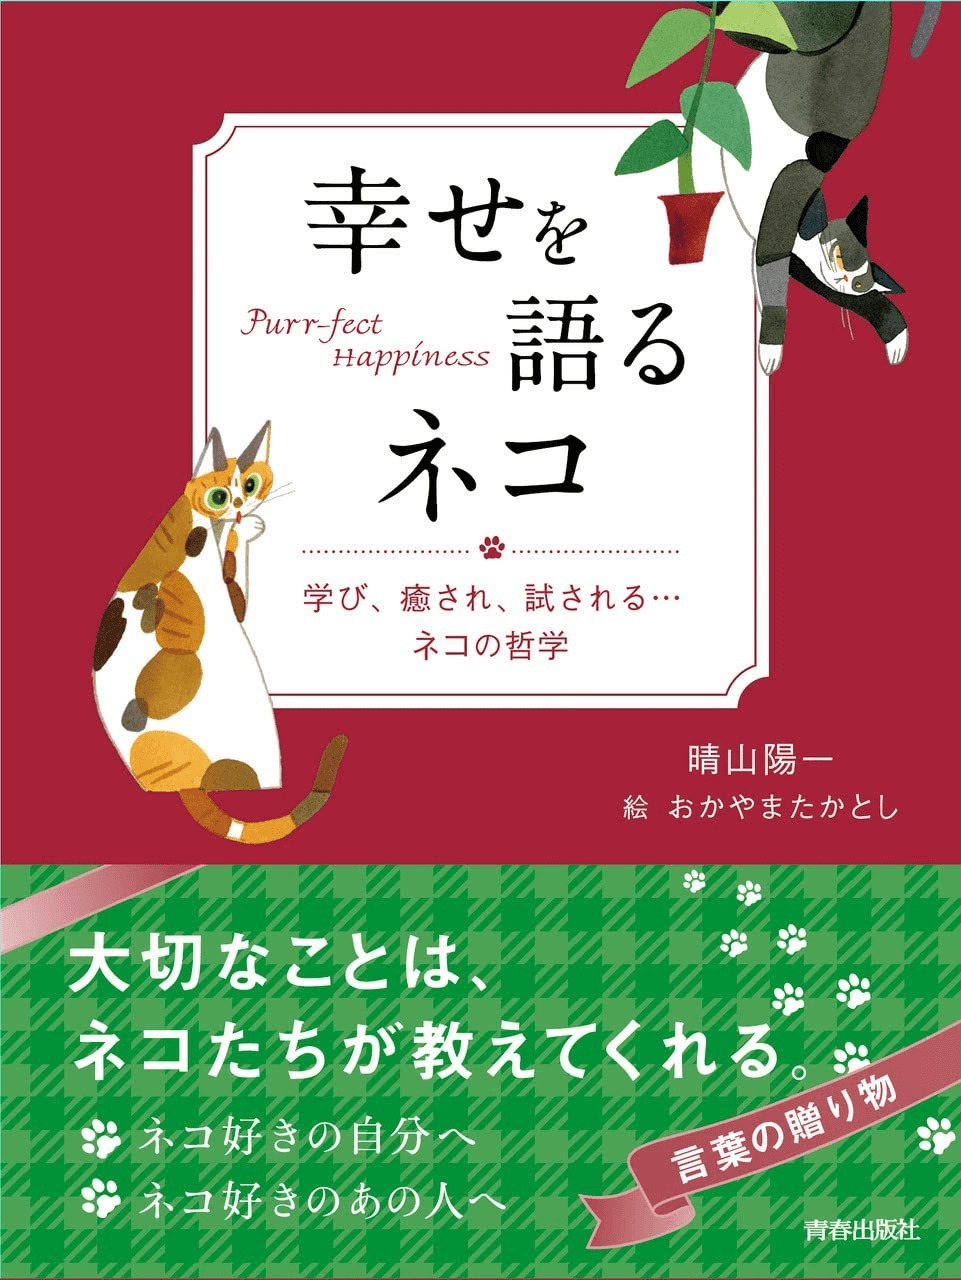 猫にまつわる名言やことわざを集めた書籍『幸せを語るネコ 』表紙イメージ